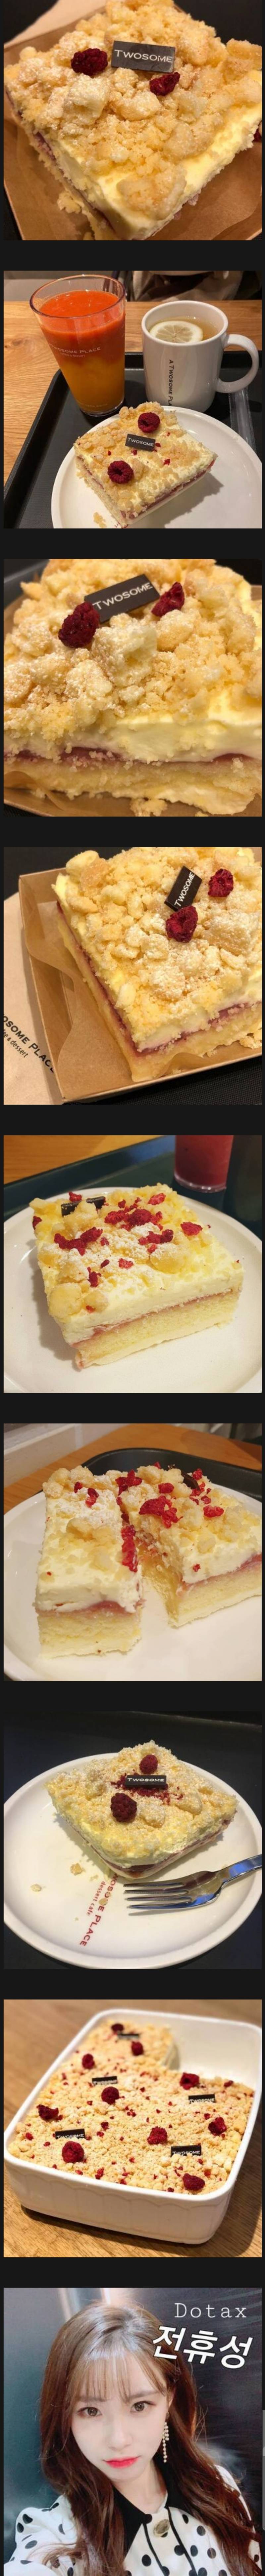 투썸플레이스 딸기 레어치즈케이크 | 인스티즈